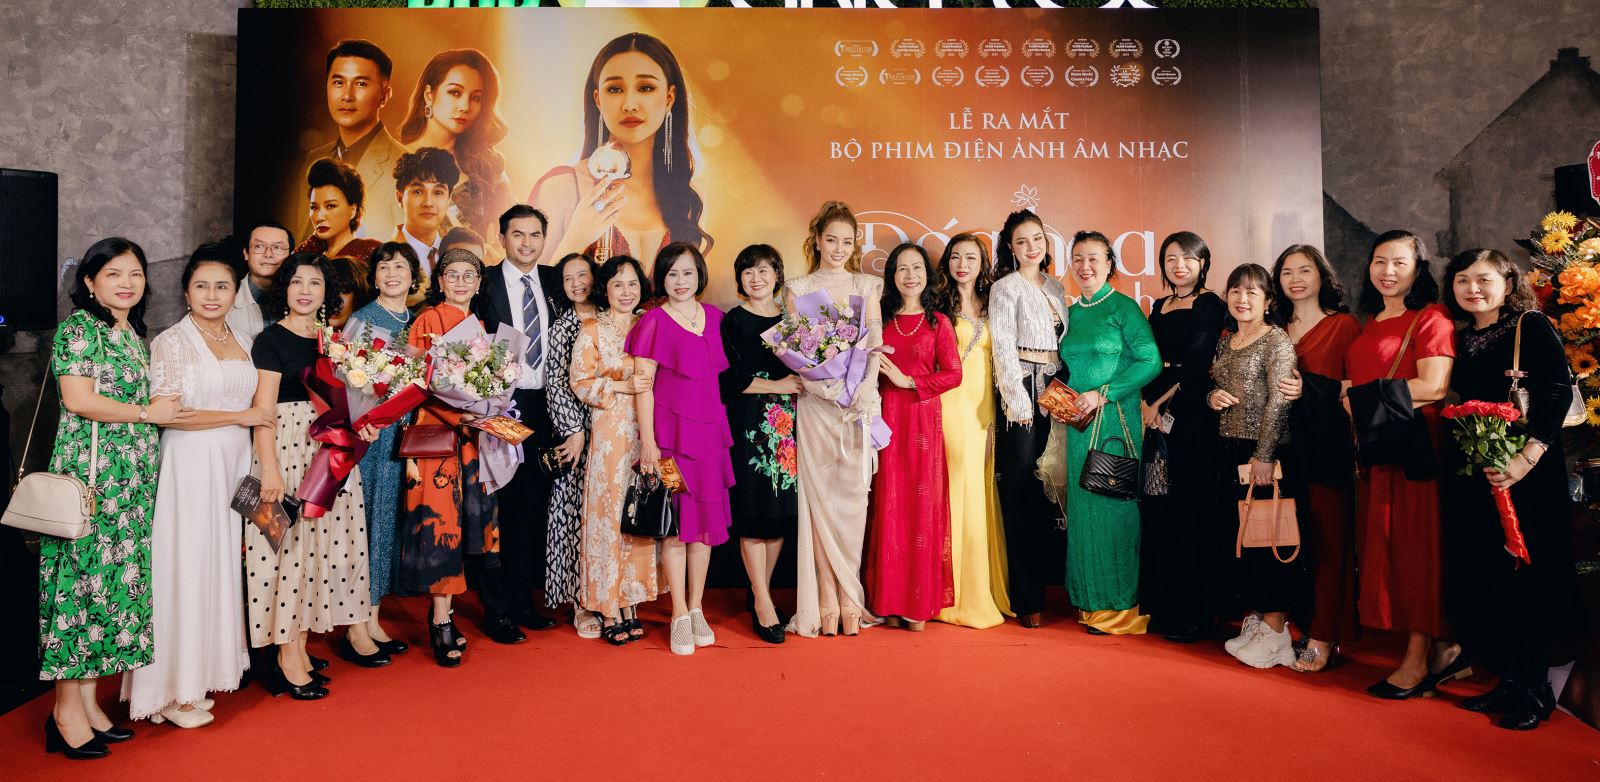 Phim “Đóa hoa mong manh” ra mắt khán giả Hà Nội